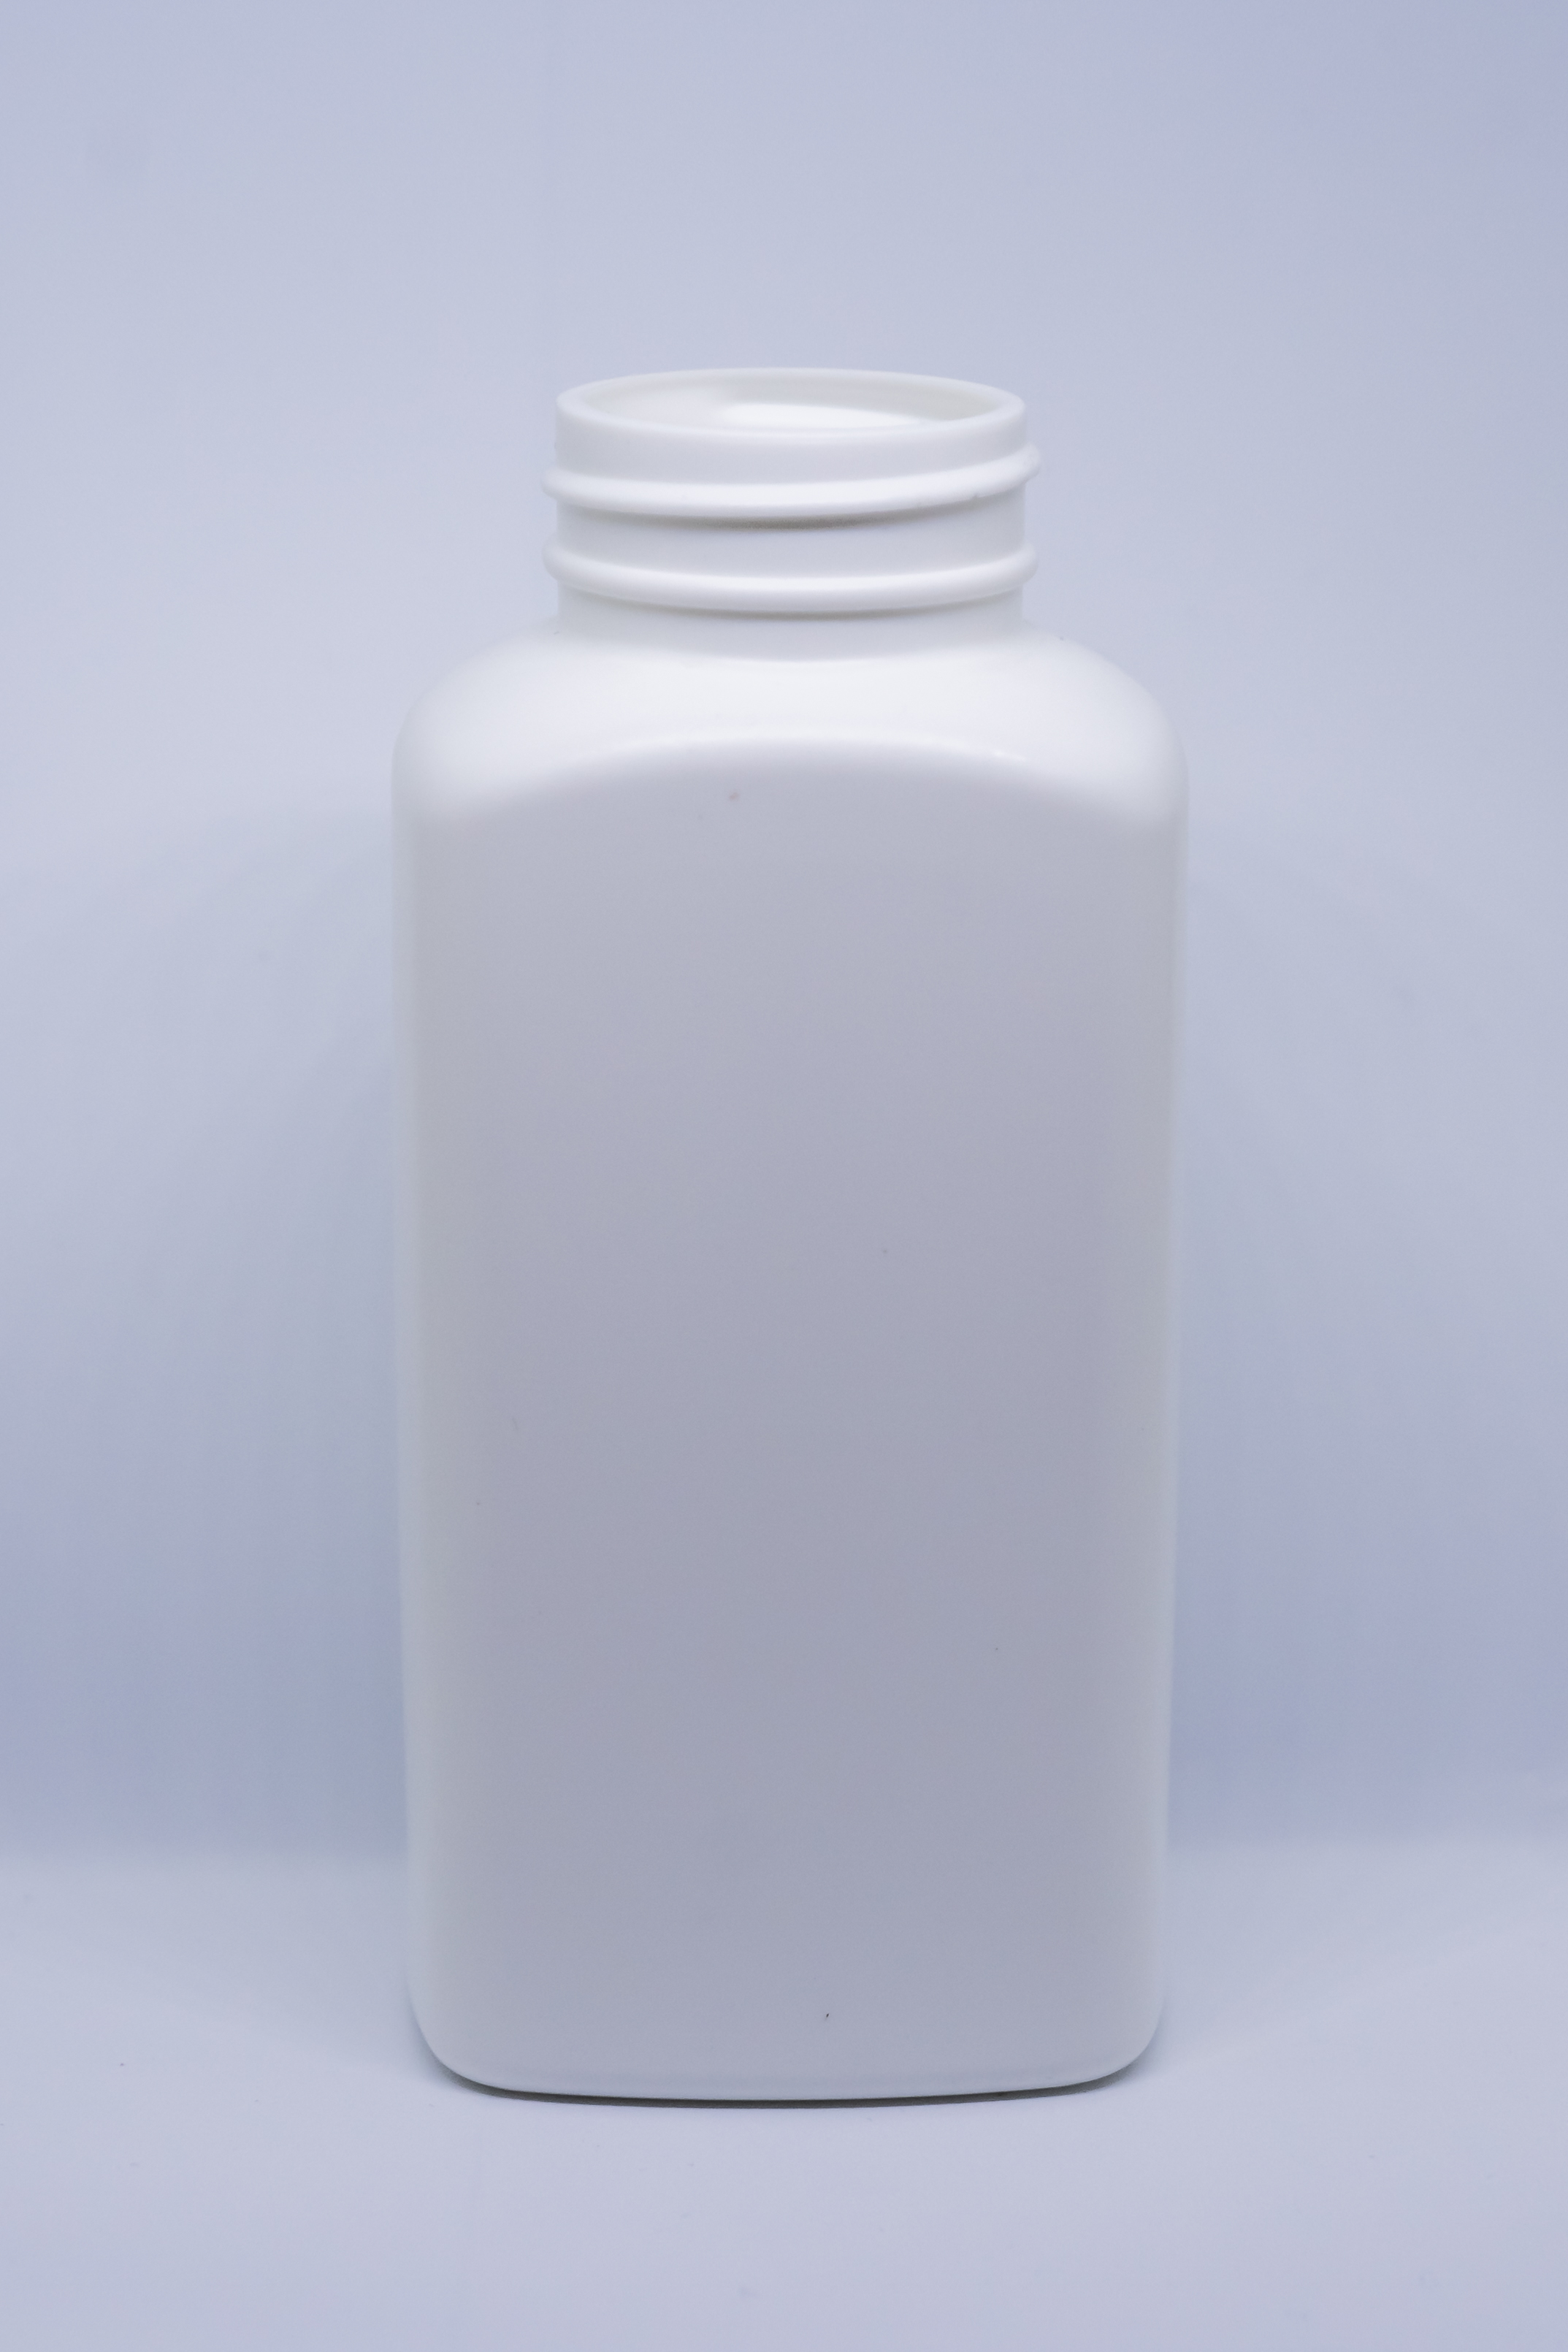 בקבוק מלבני 250 מ"ל HDPE פייה 38 מ"מ לבן